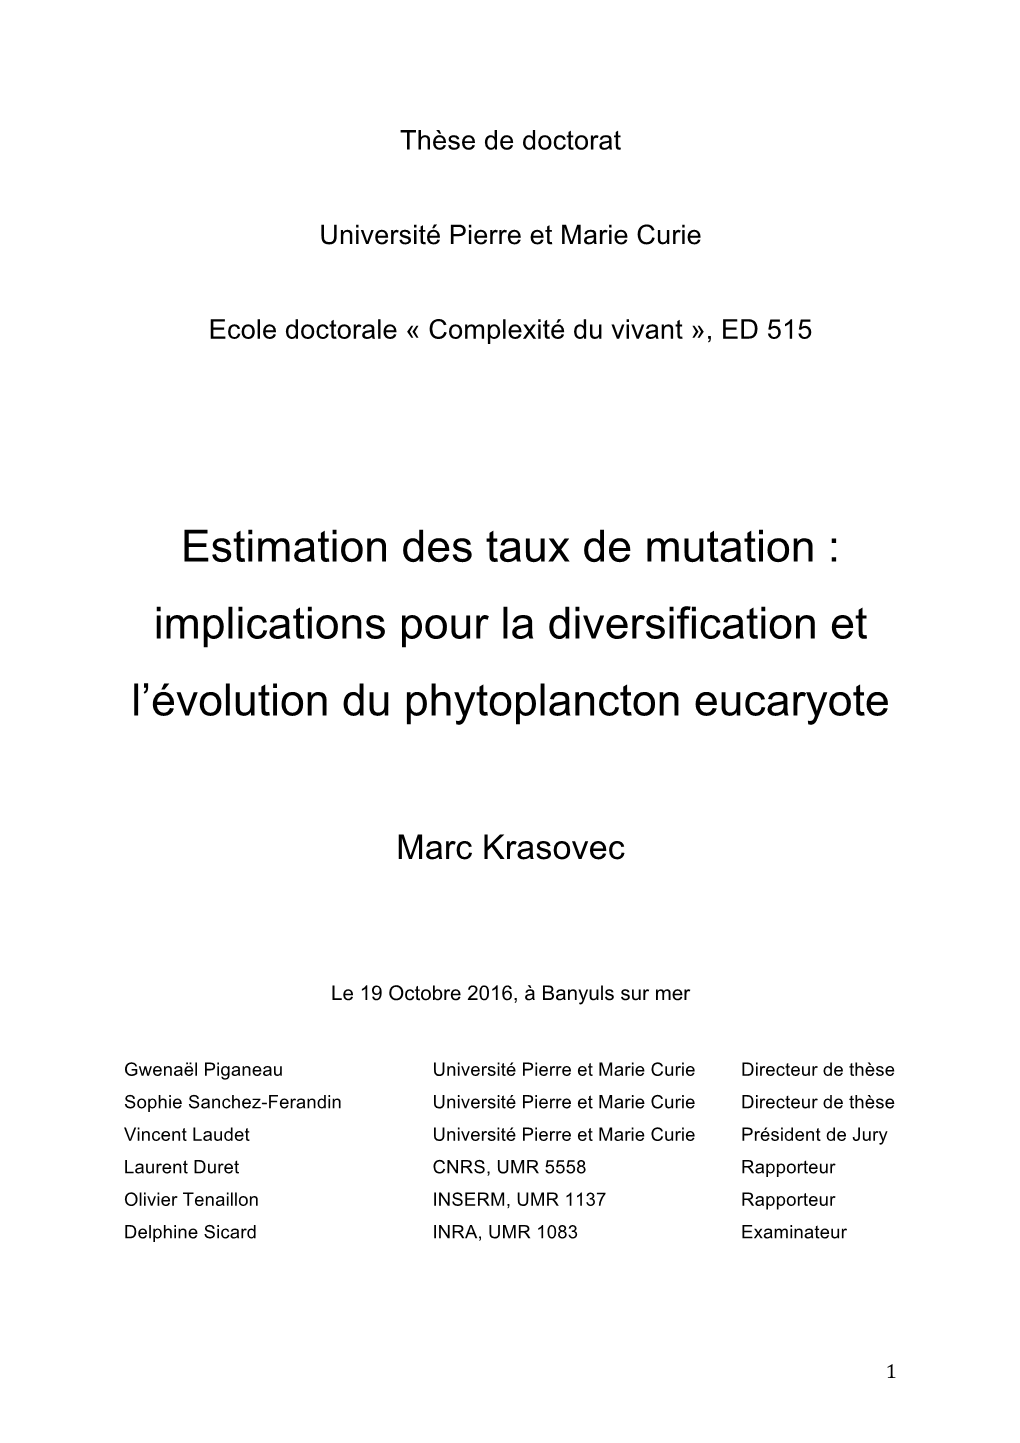 Estimation Des Taux De Mutation : Implications Pour La Diversification Et L'évolution Du Phytoplancton Eucaryote